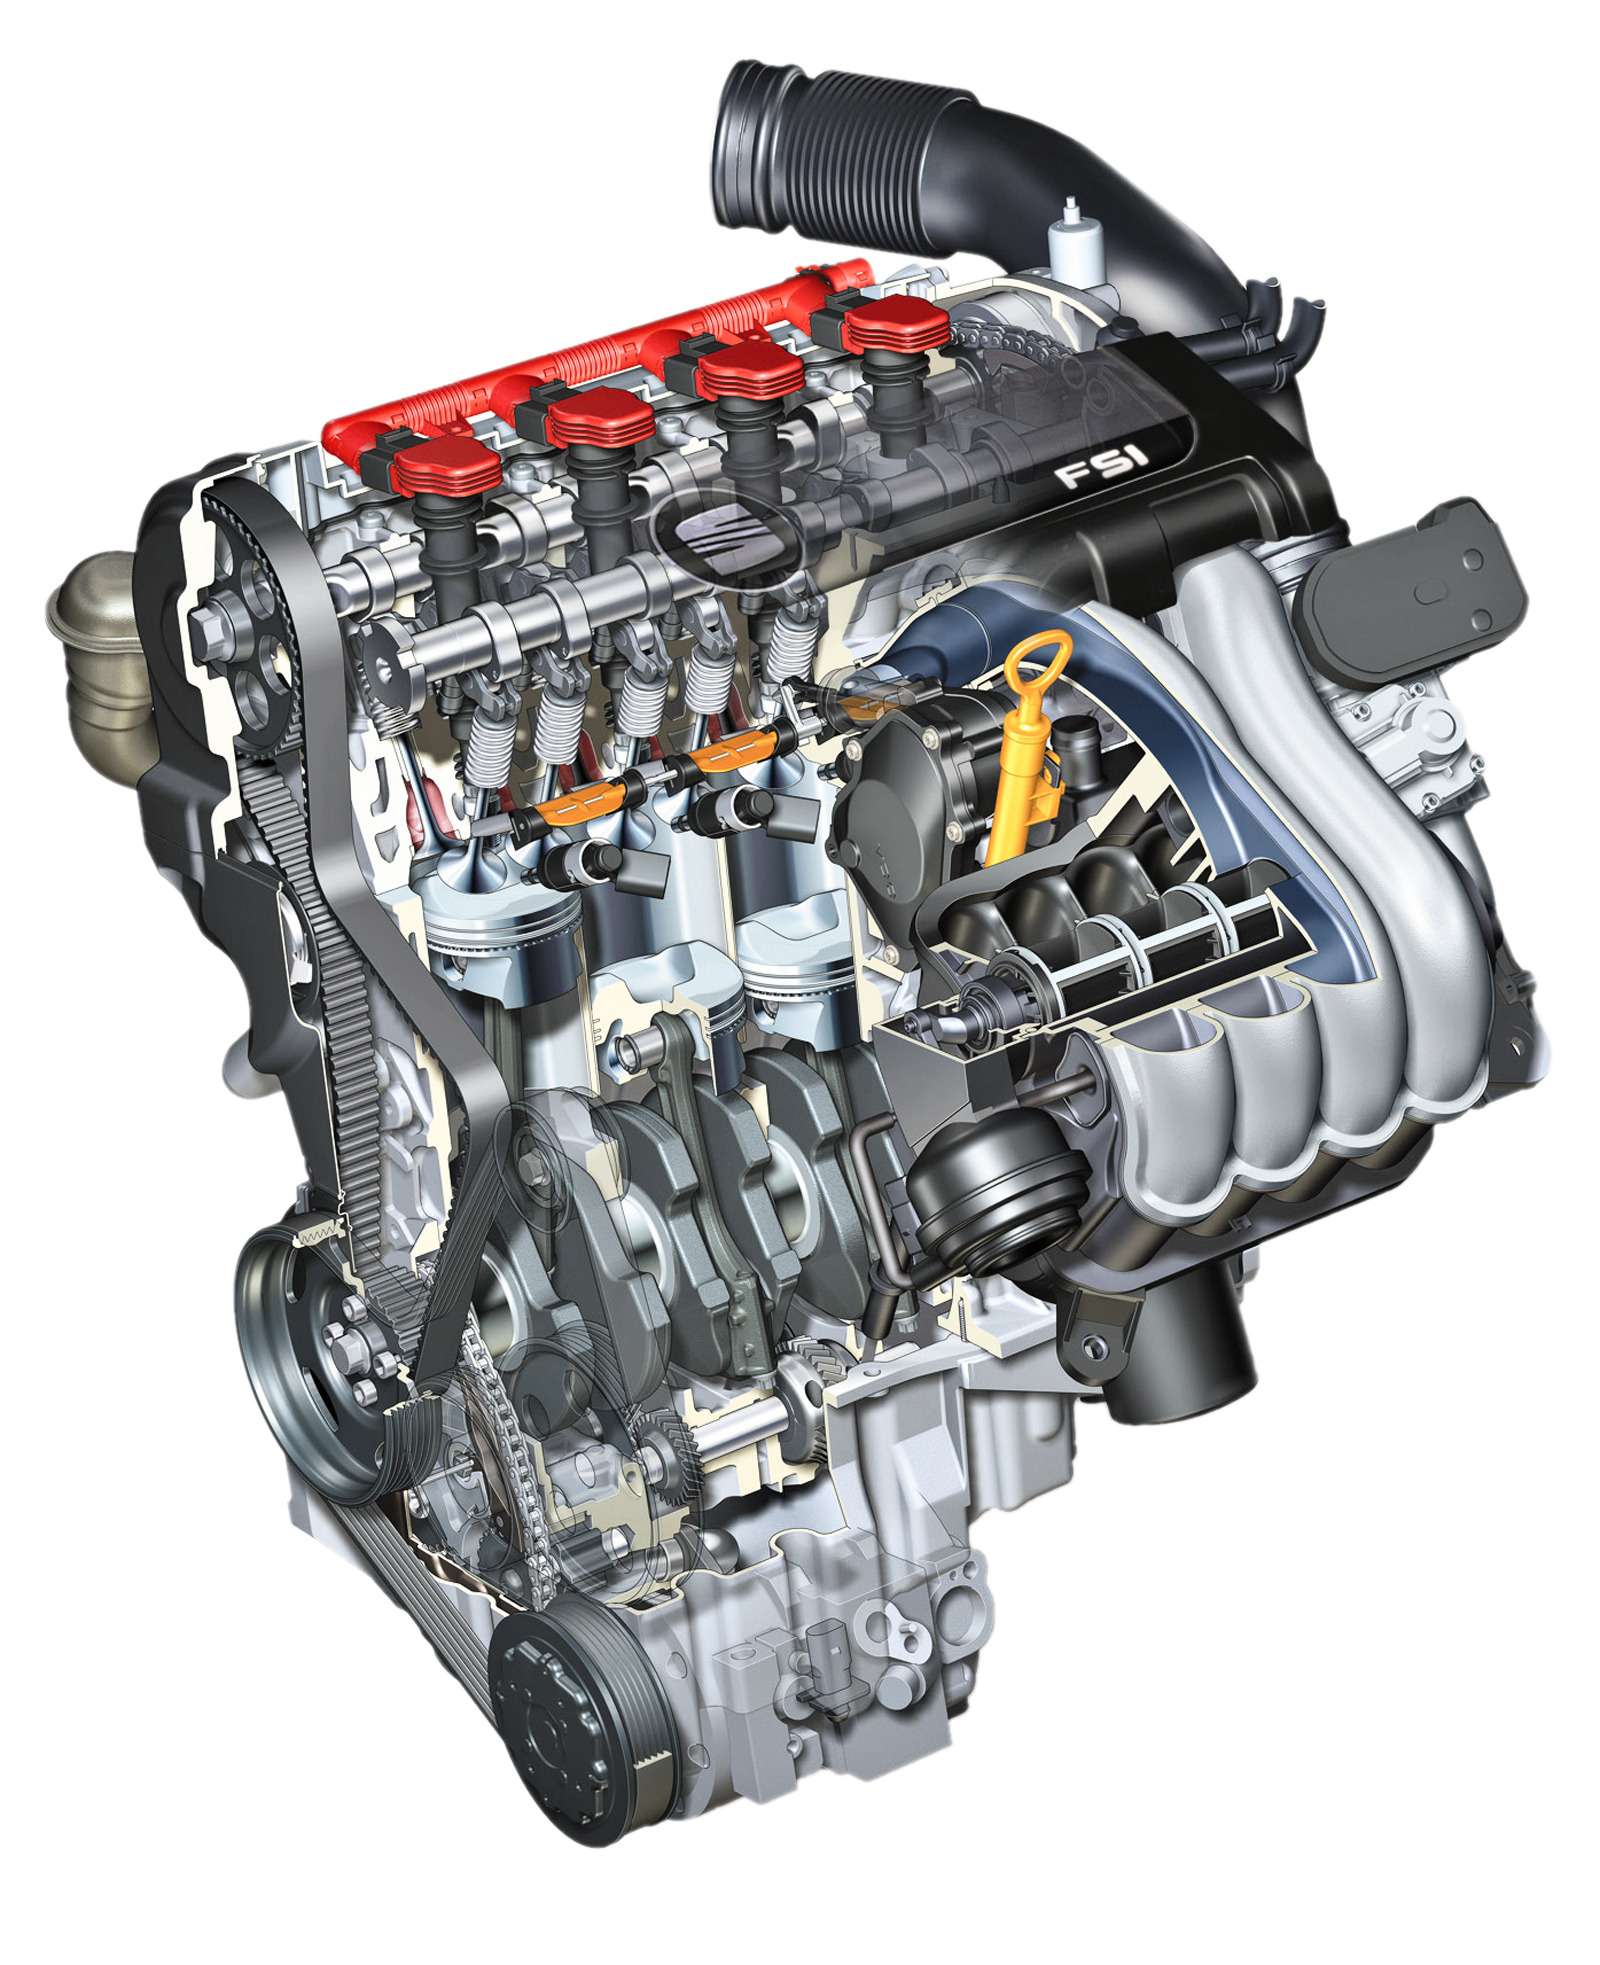 Рейтинг надежности двигателей автомобилей: два литра проблем - фото 590356